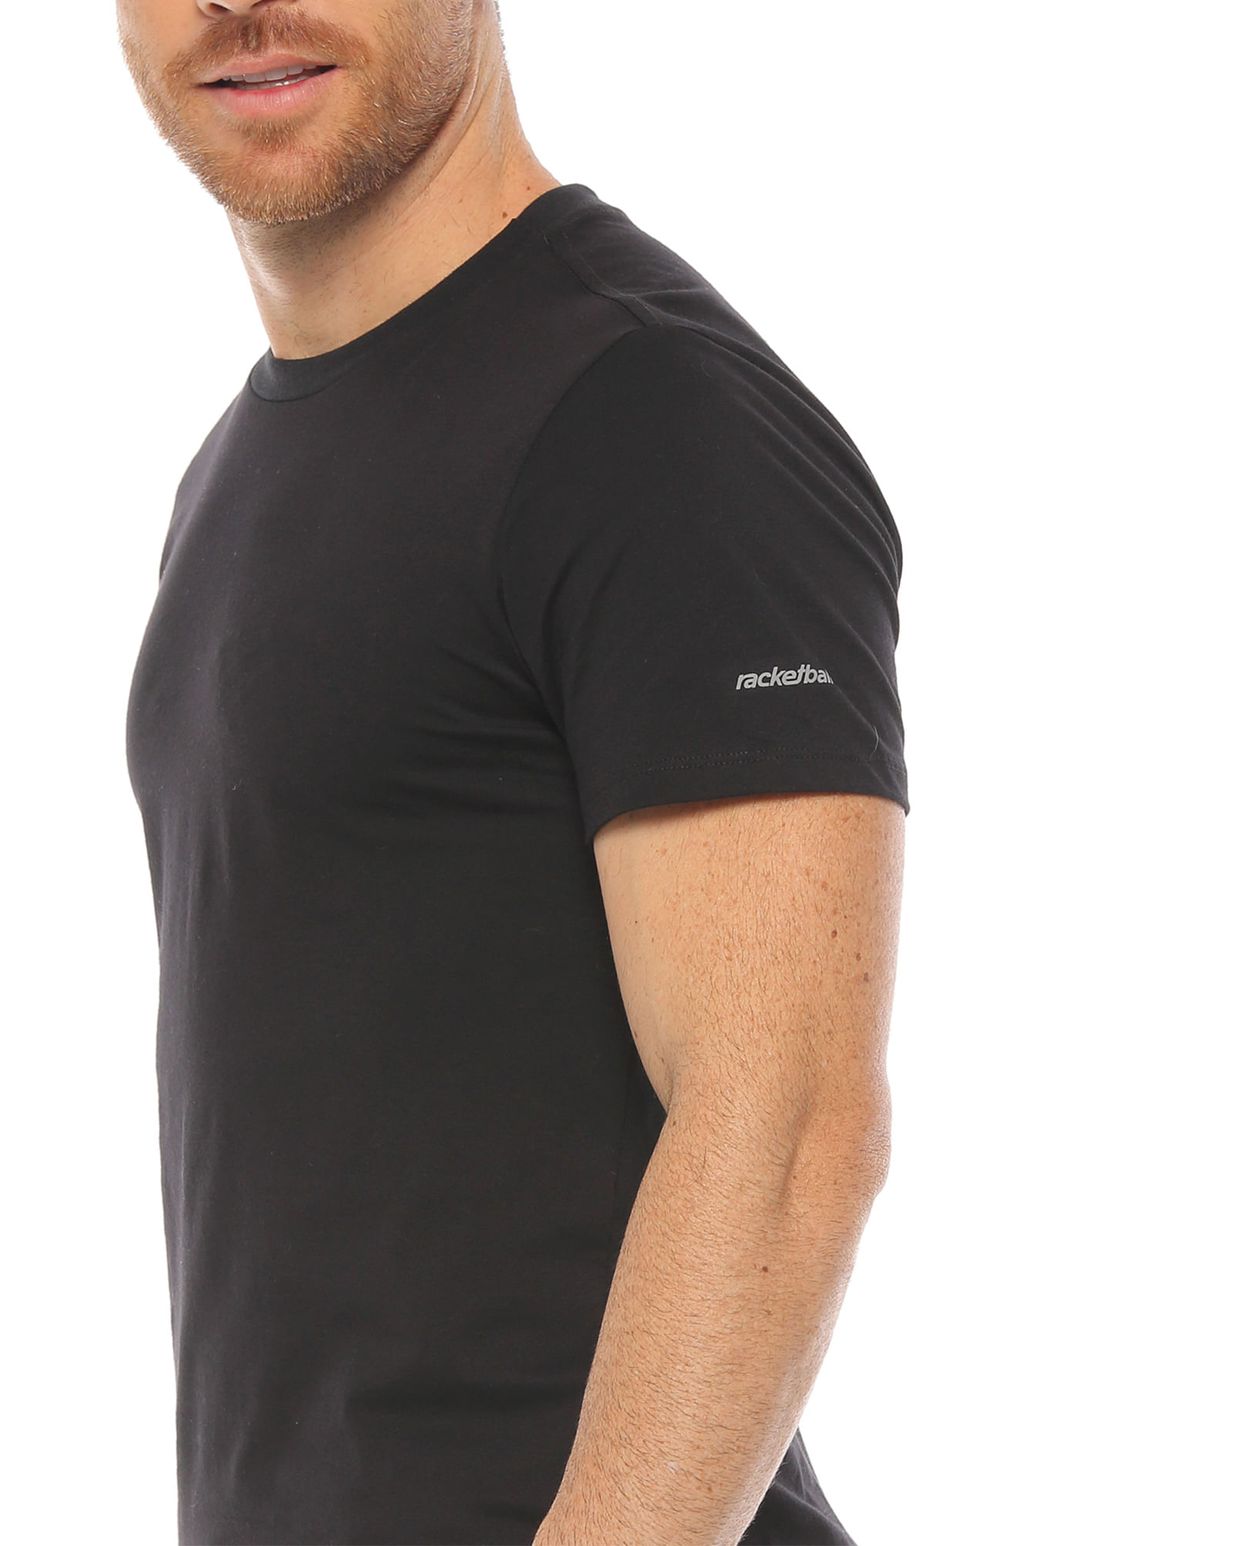 camiseta manga corta color negra para hombre parte lateral derecha con logo racketball